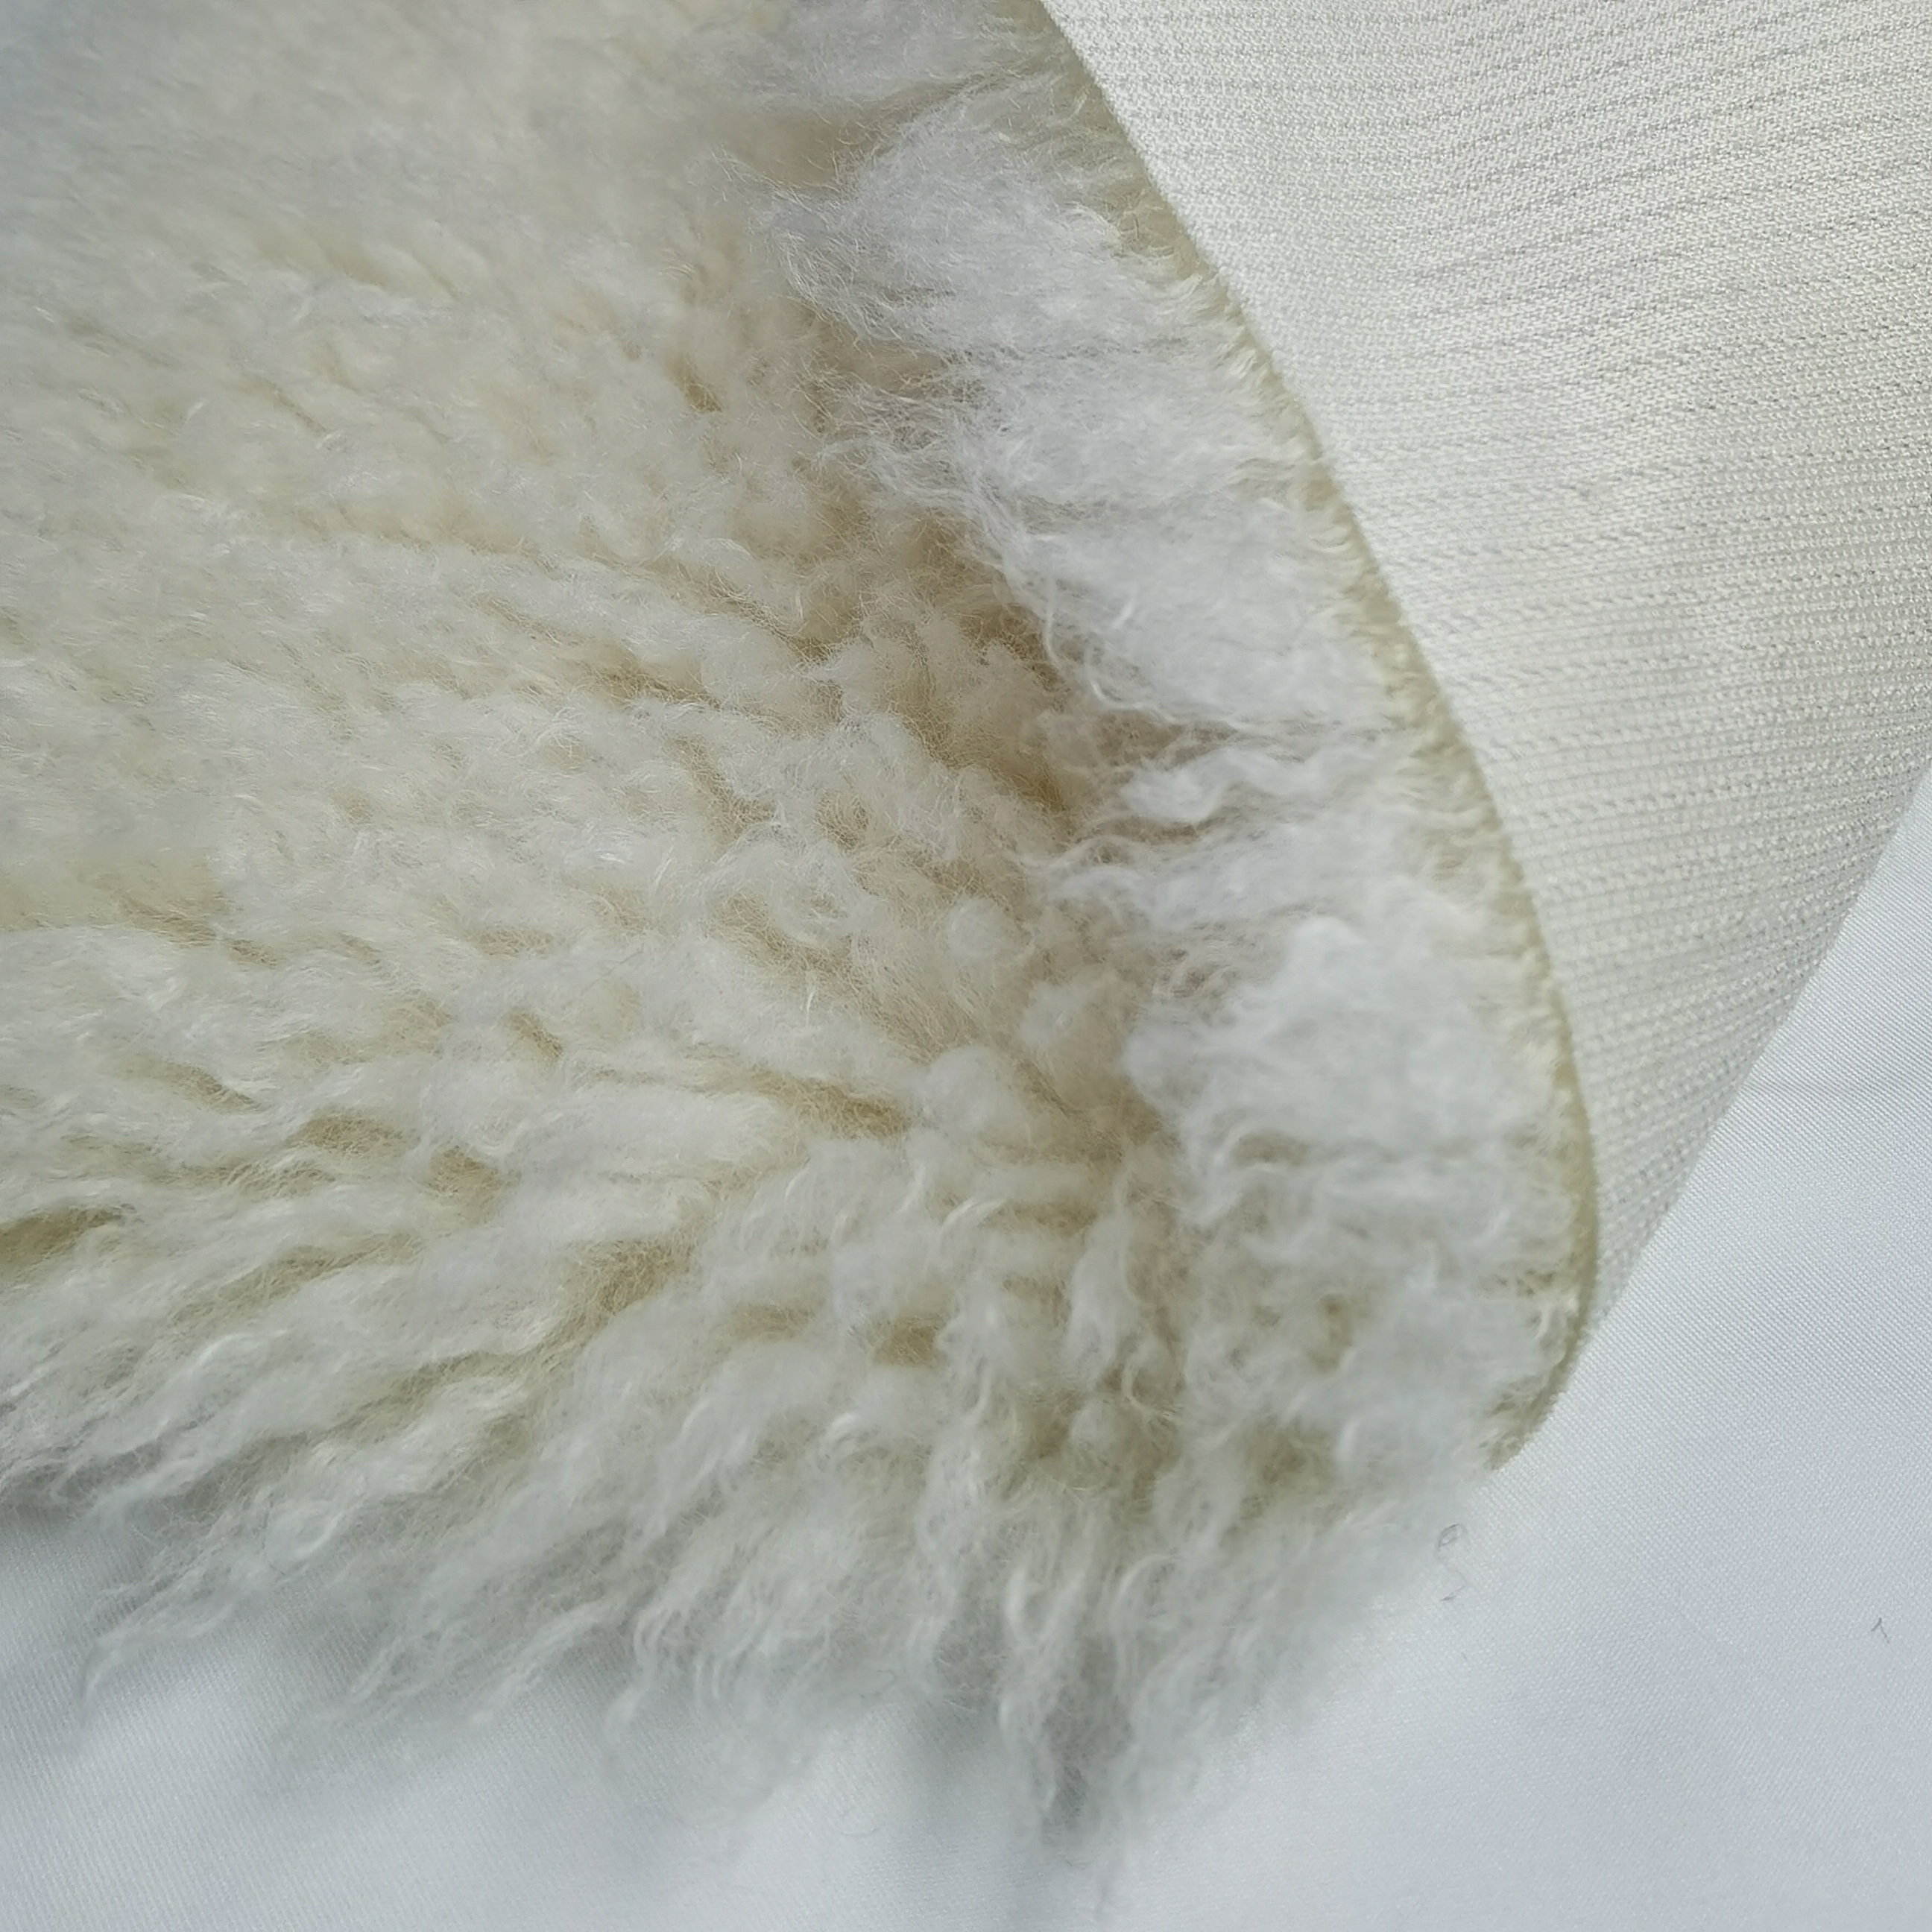 shearling fleece  fur Plush fabric